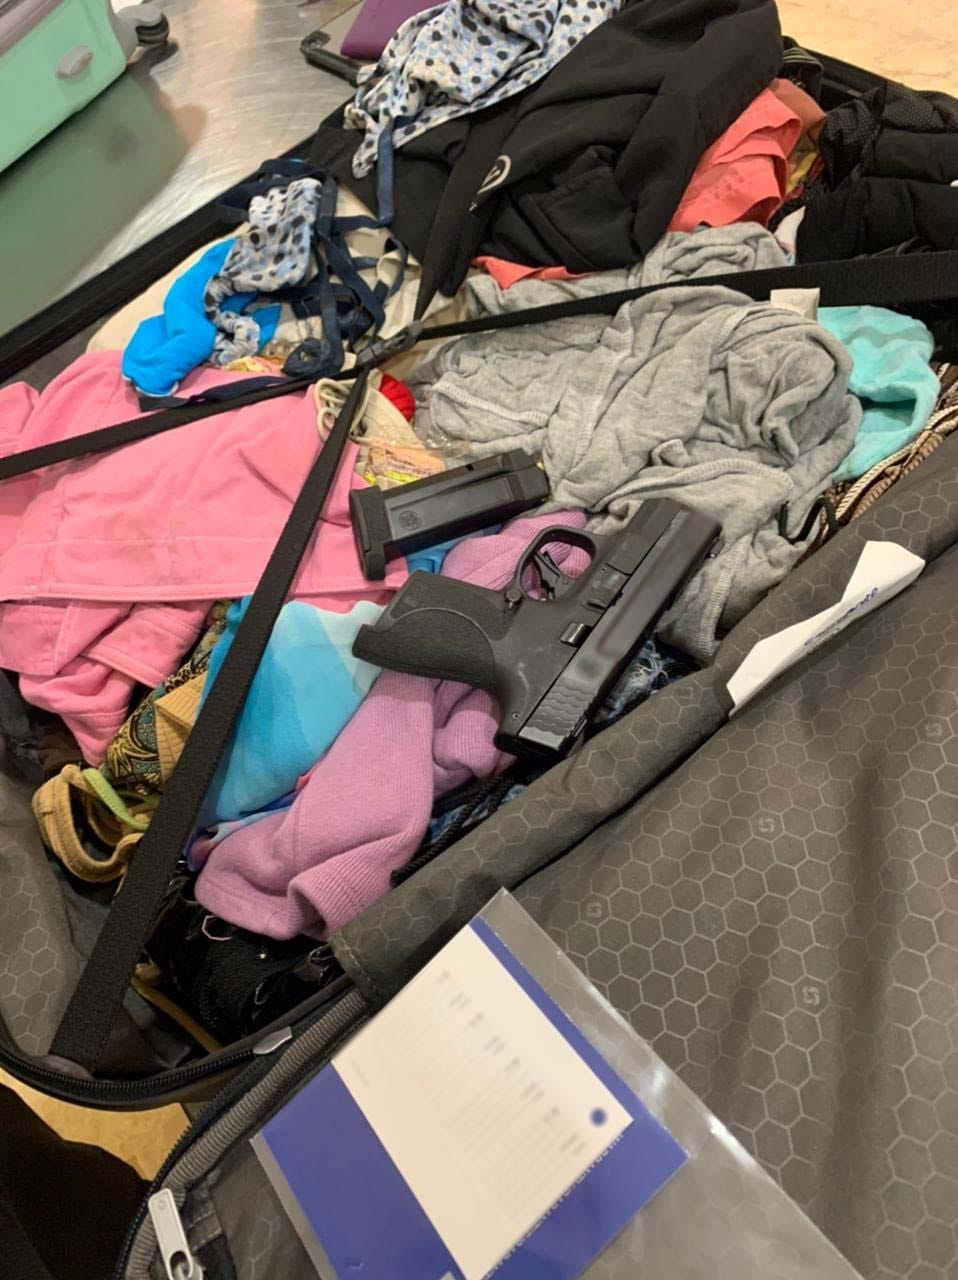 Detienen a dos mujeres en el aeropuerto de Cancún por transportar armas en su equipaje